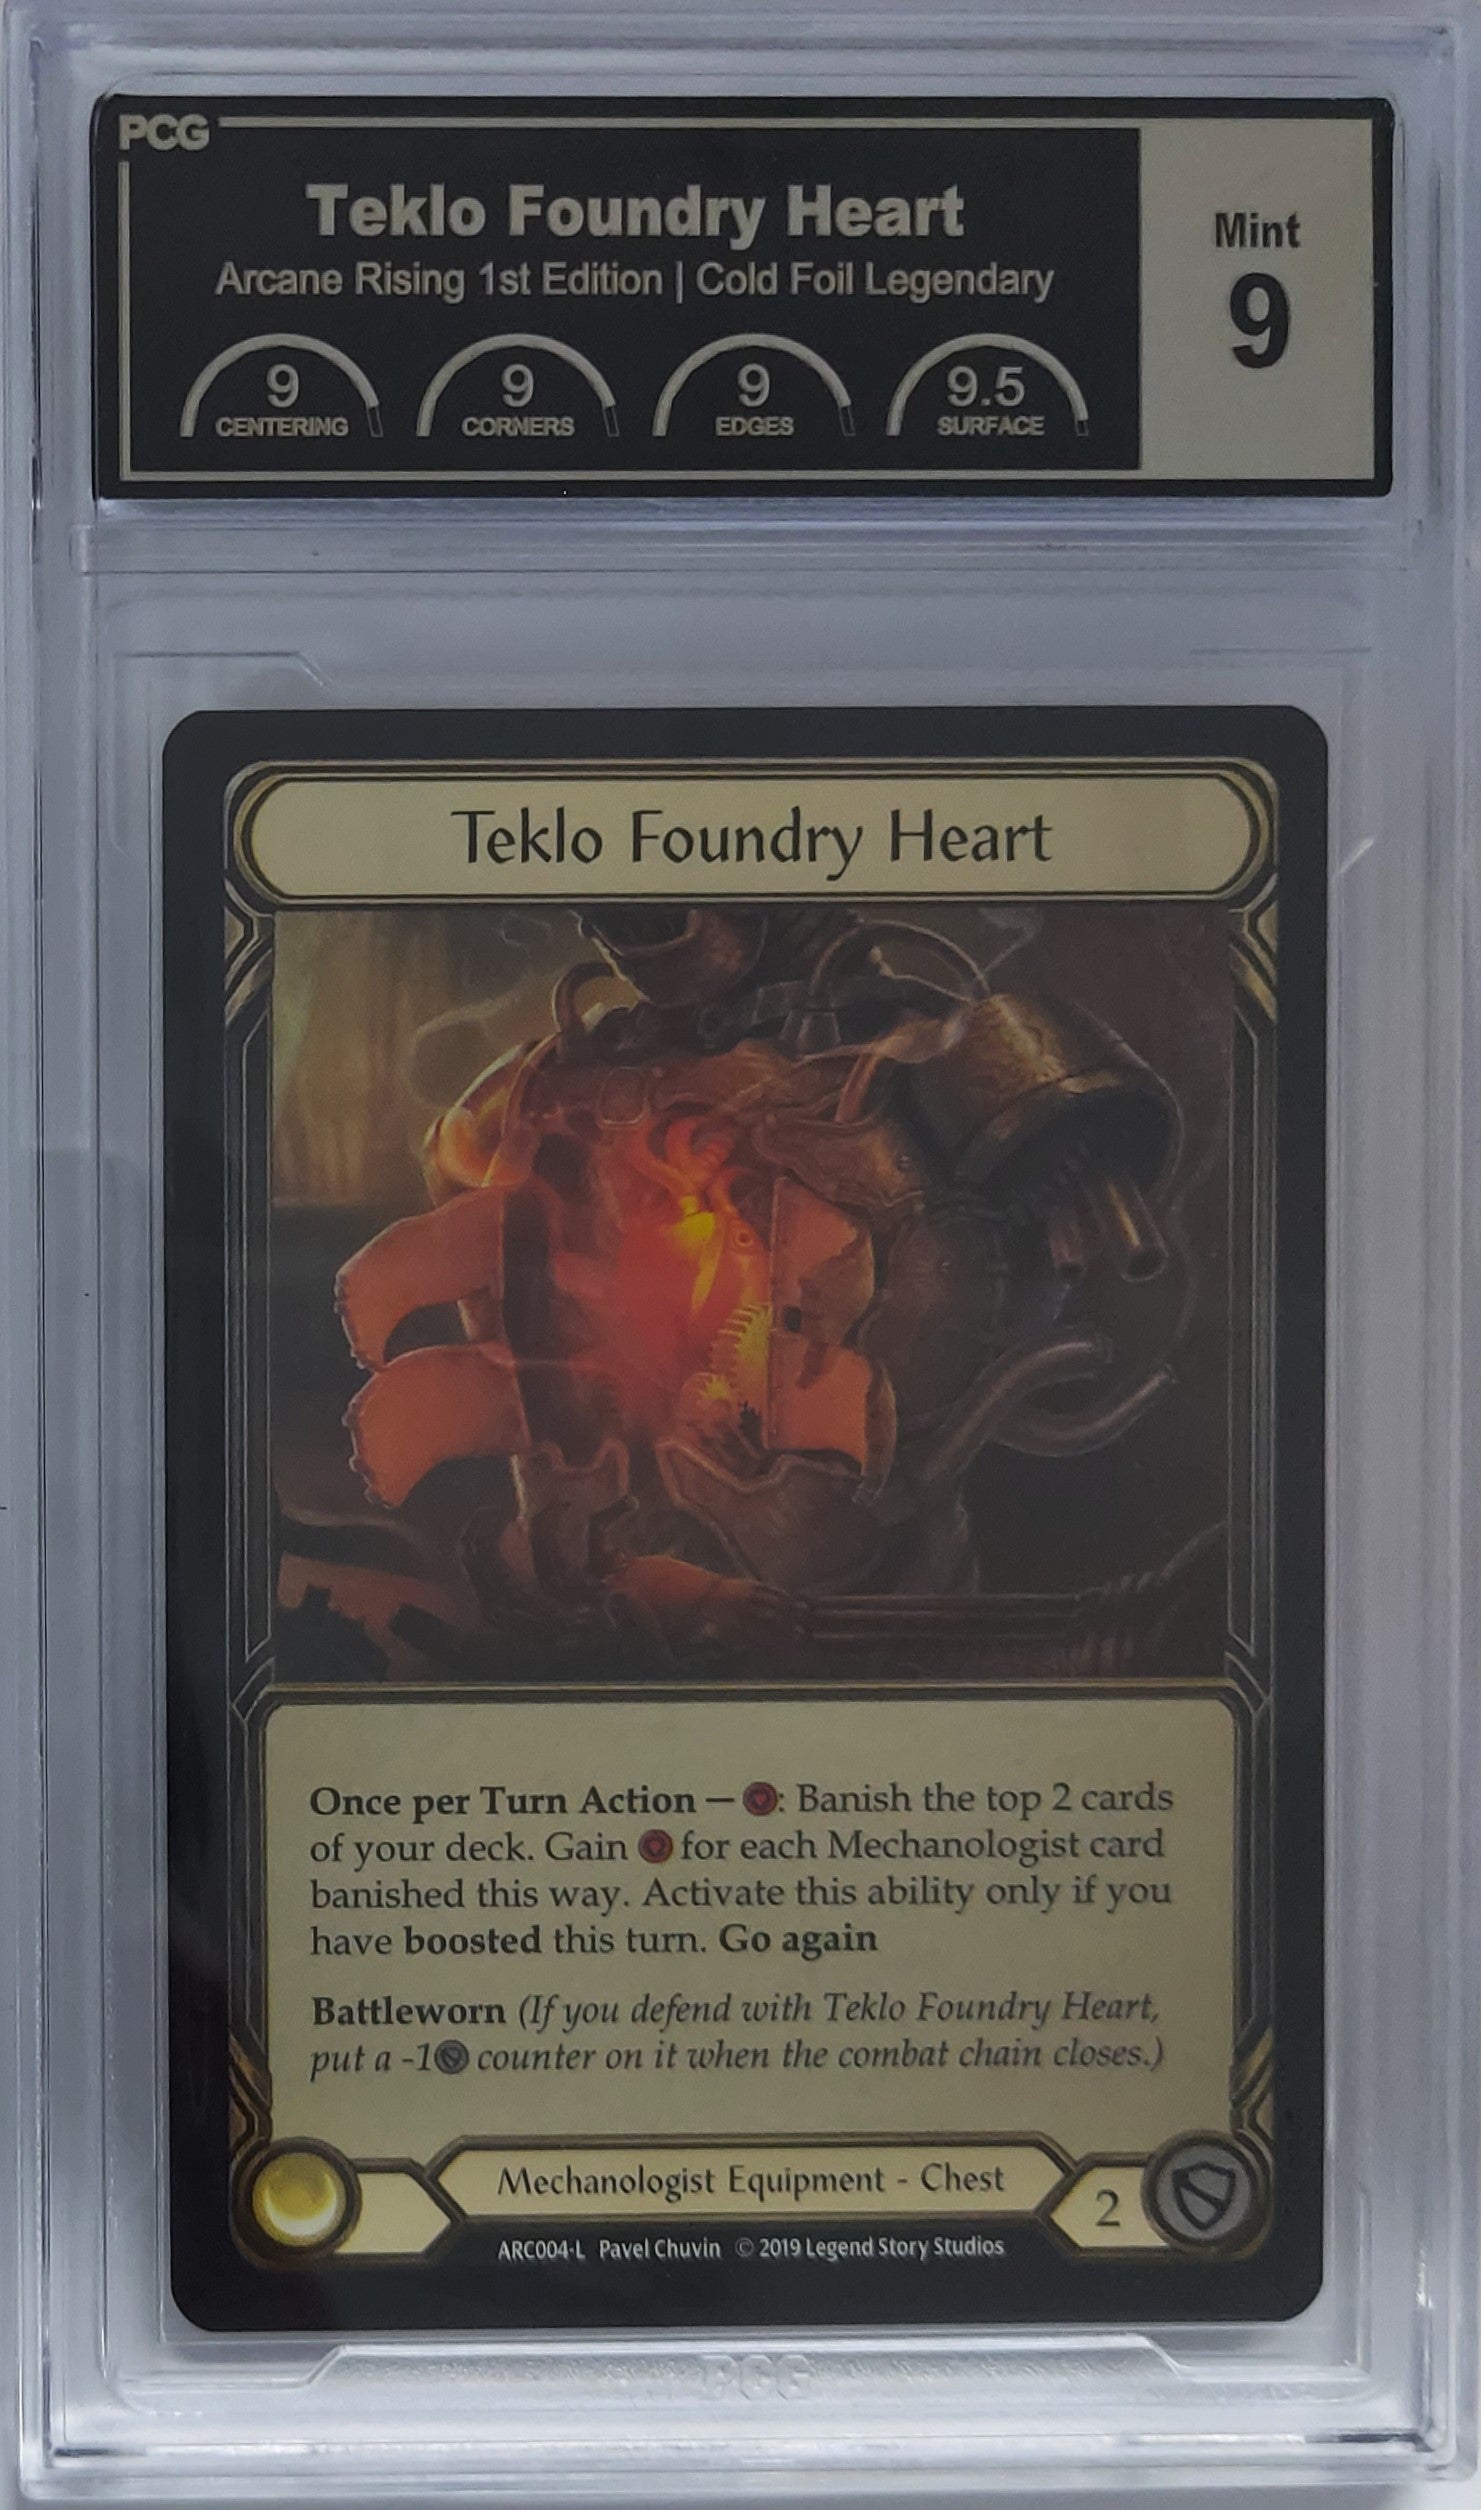 [PCG 9] Teklo Foundry Heart - ARC004